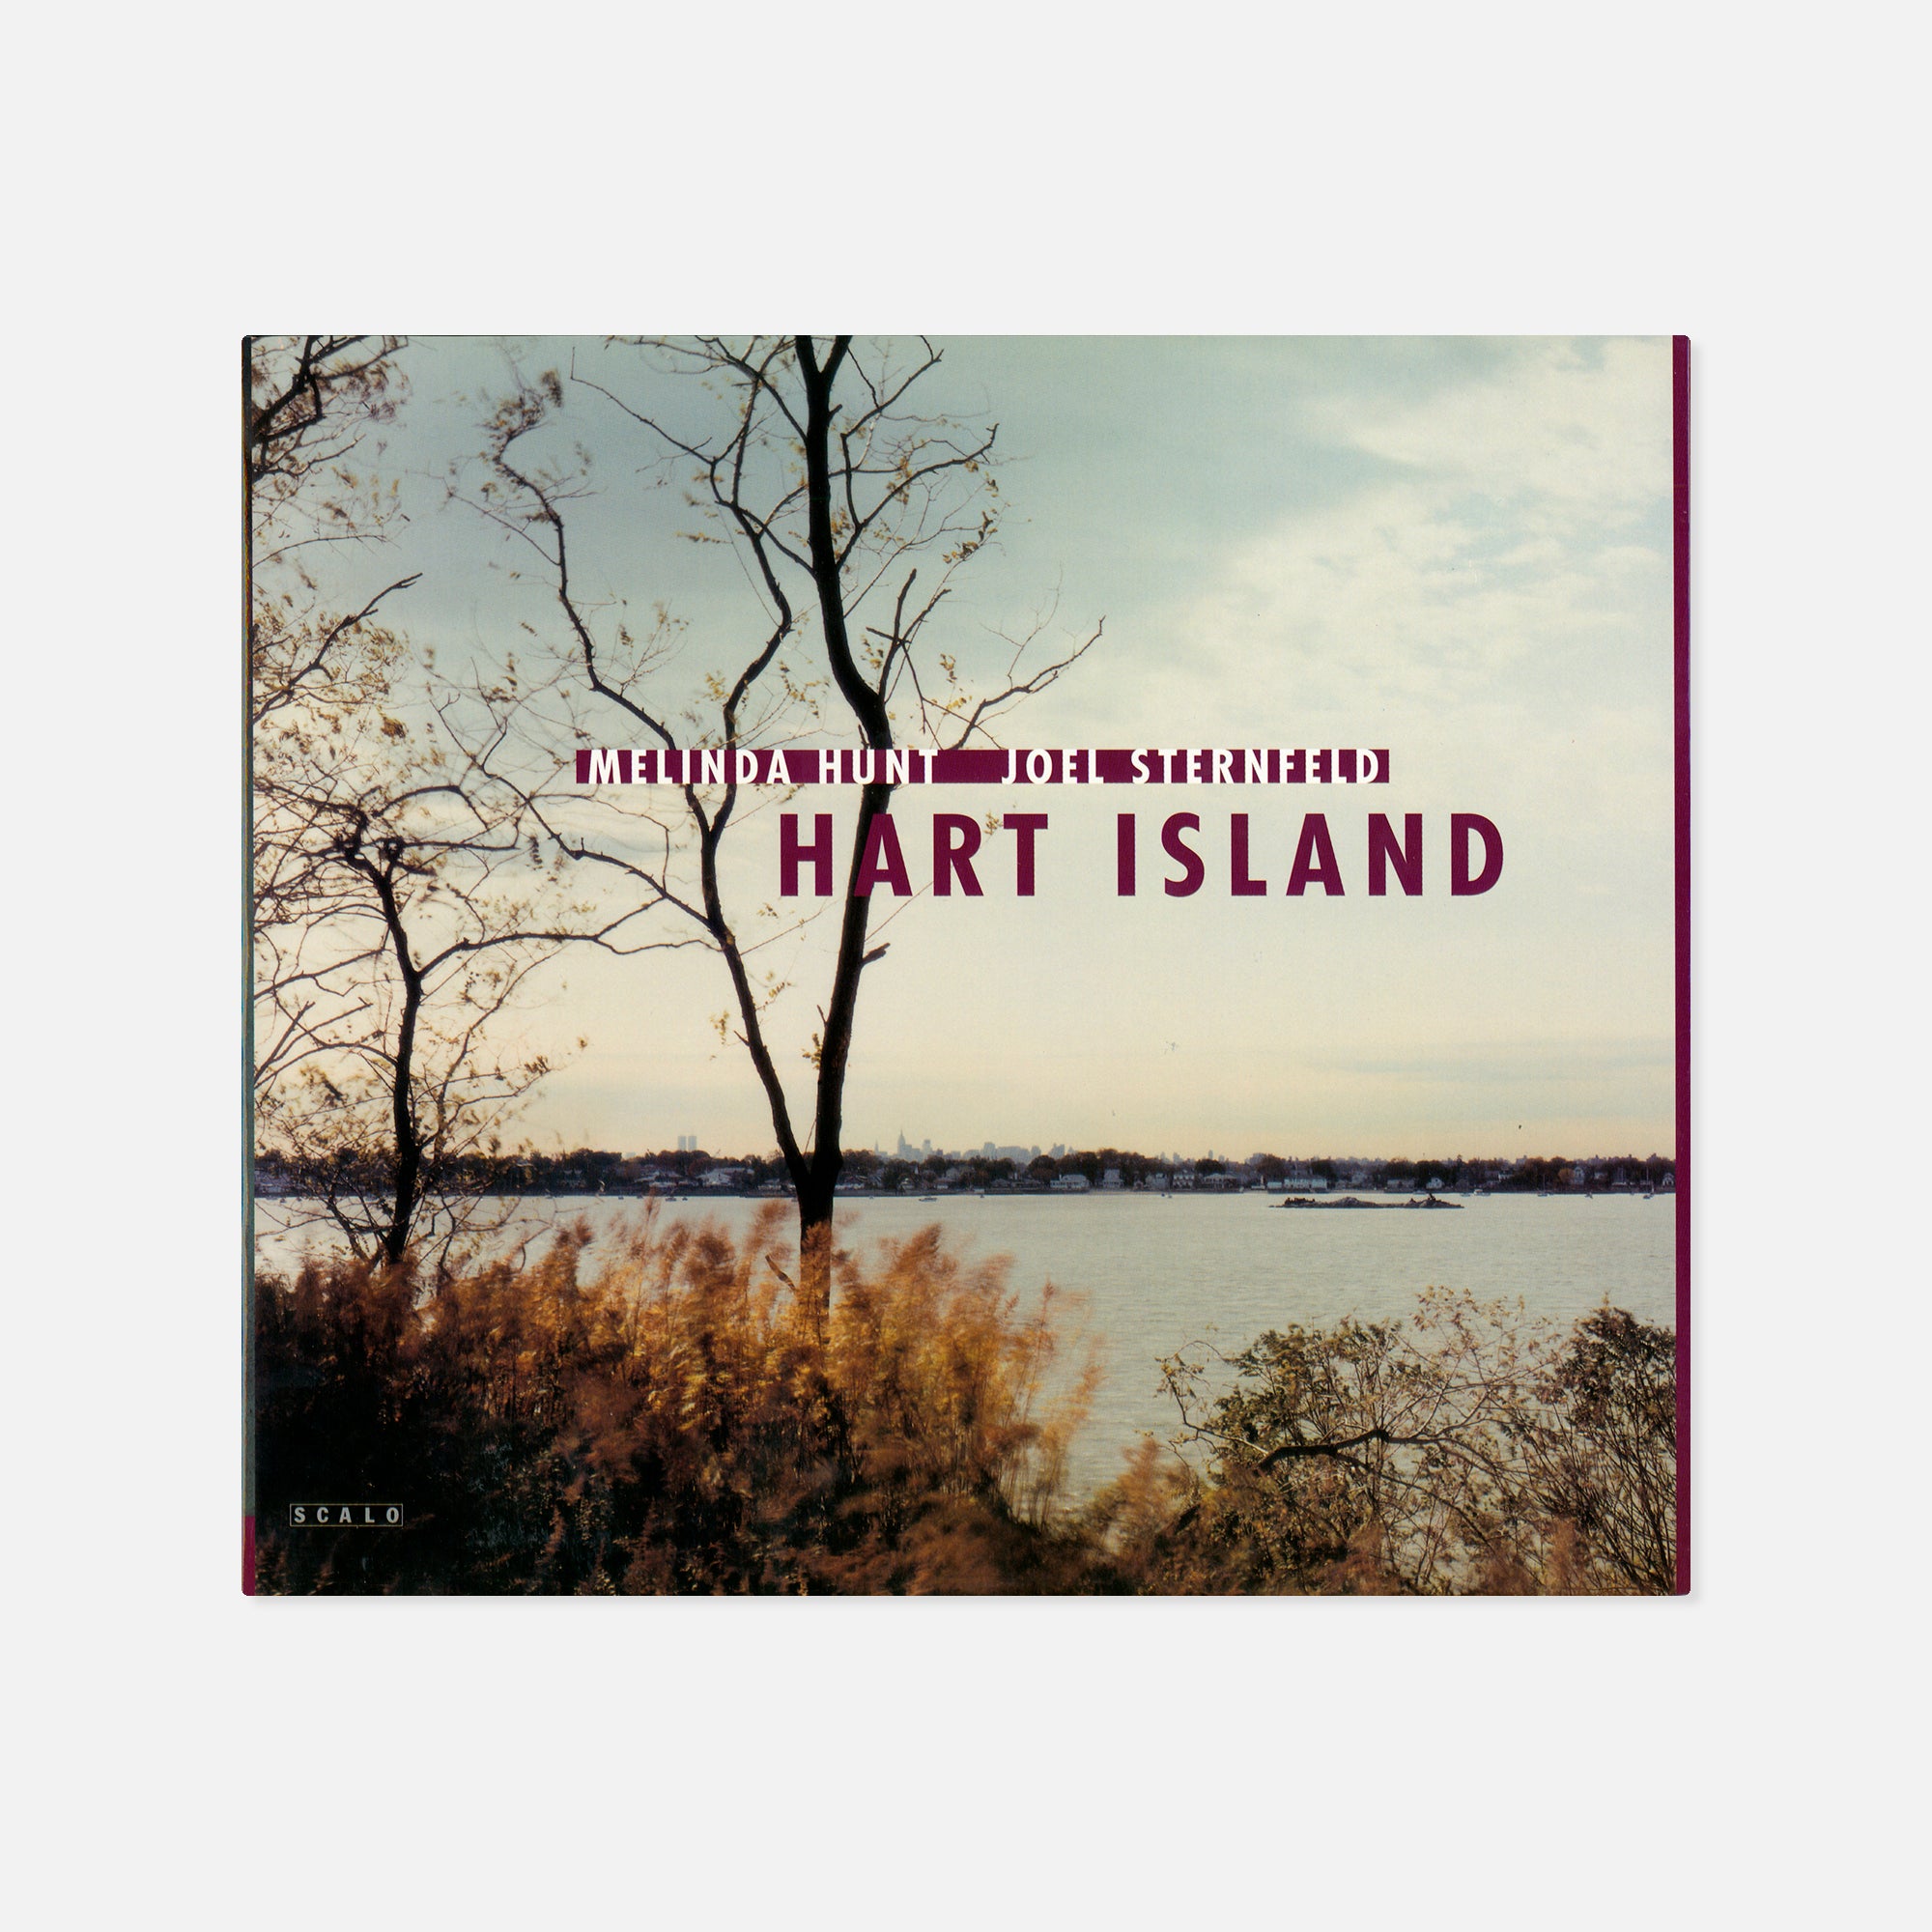 Joel Sternfeld & Melissa Hunt — Hart Island